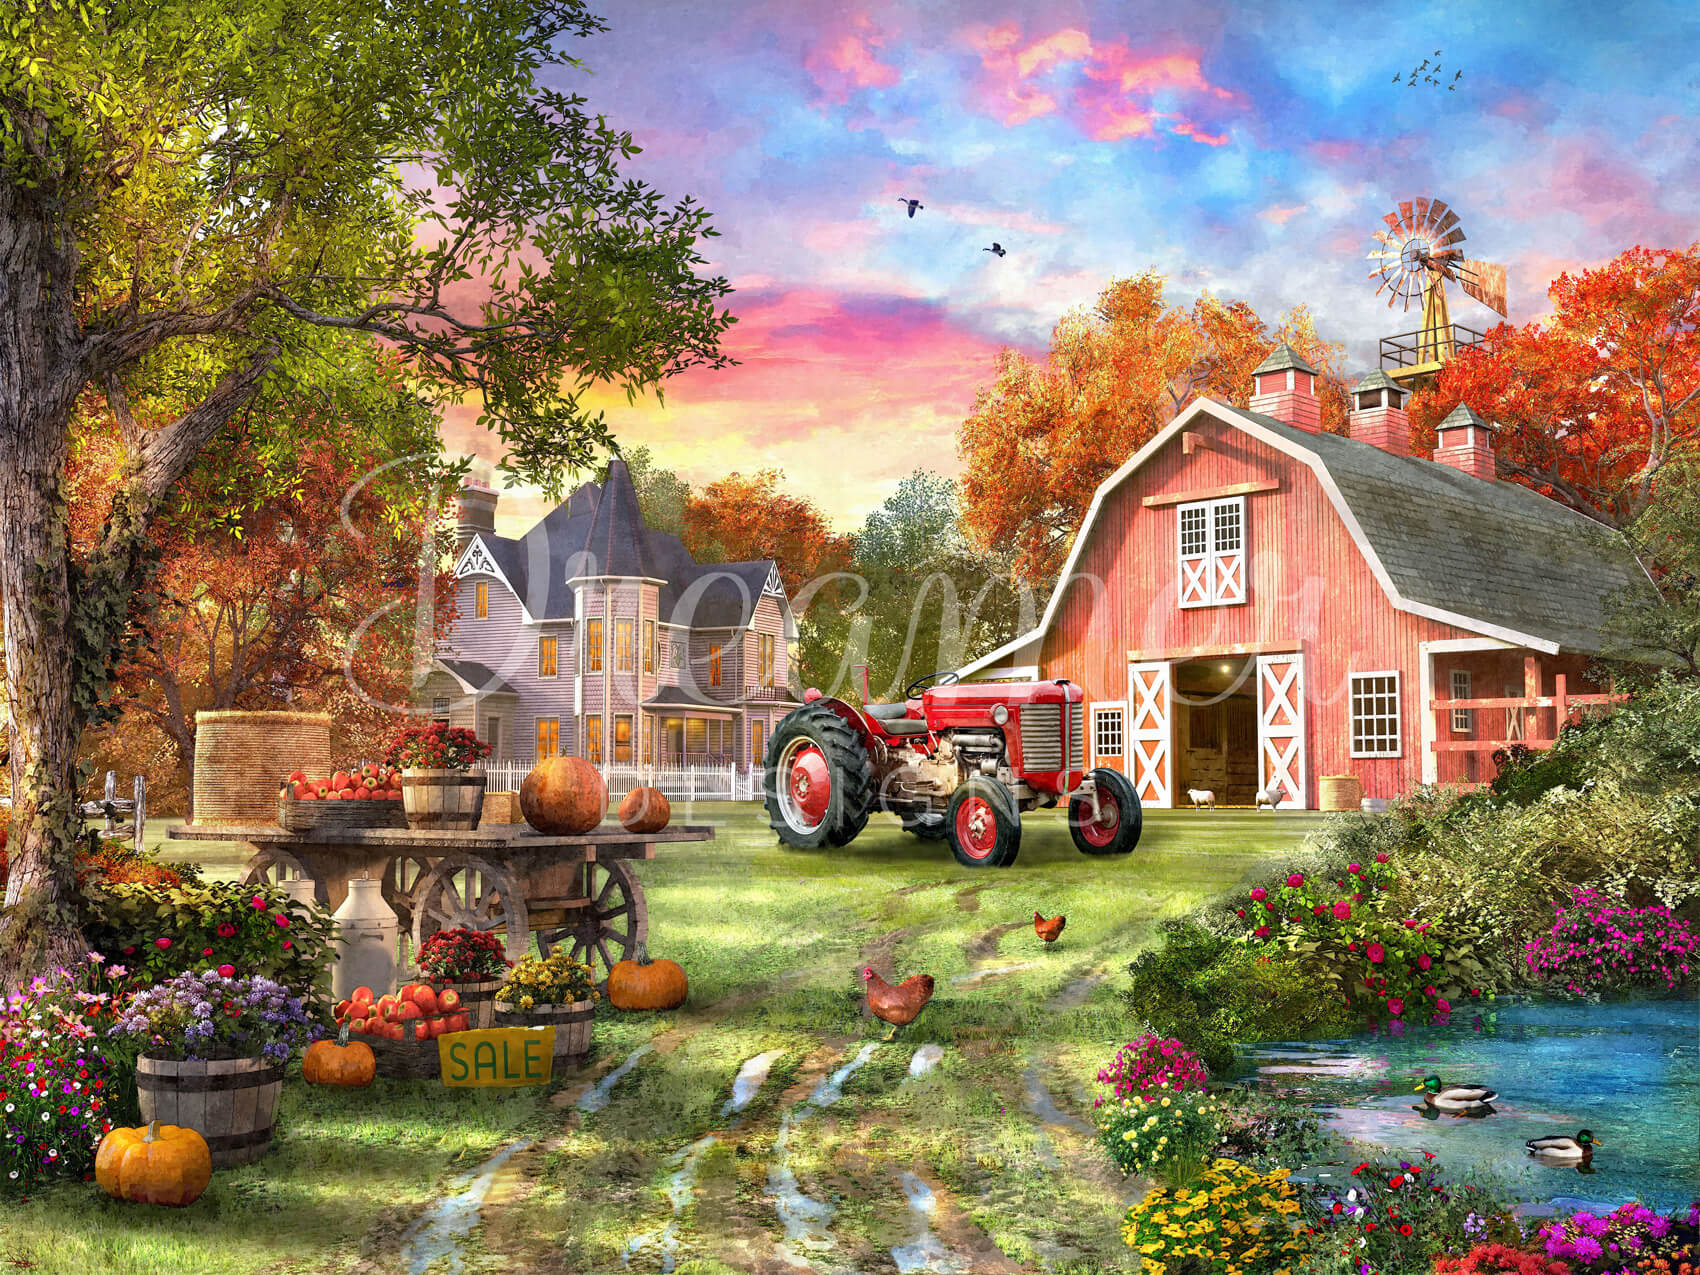 The Autumn Farm